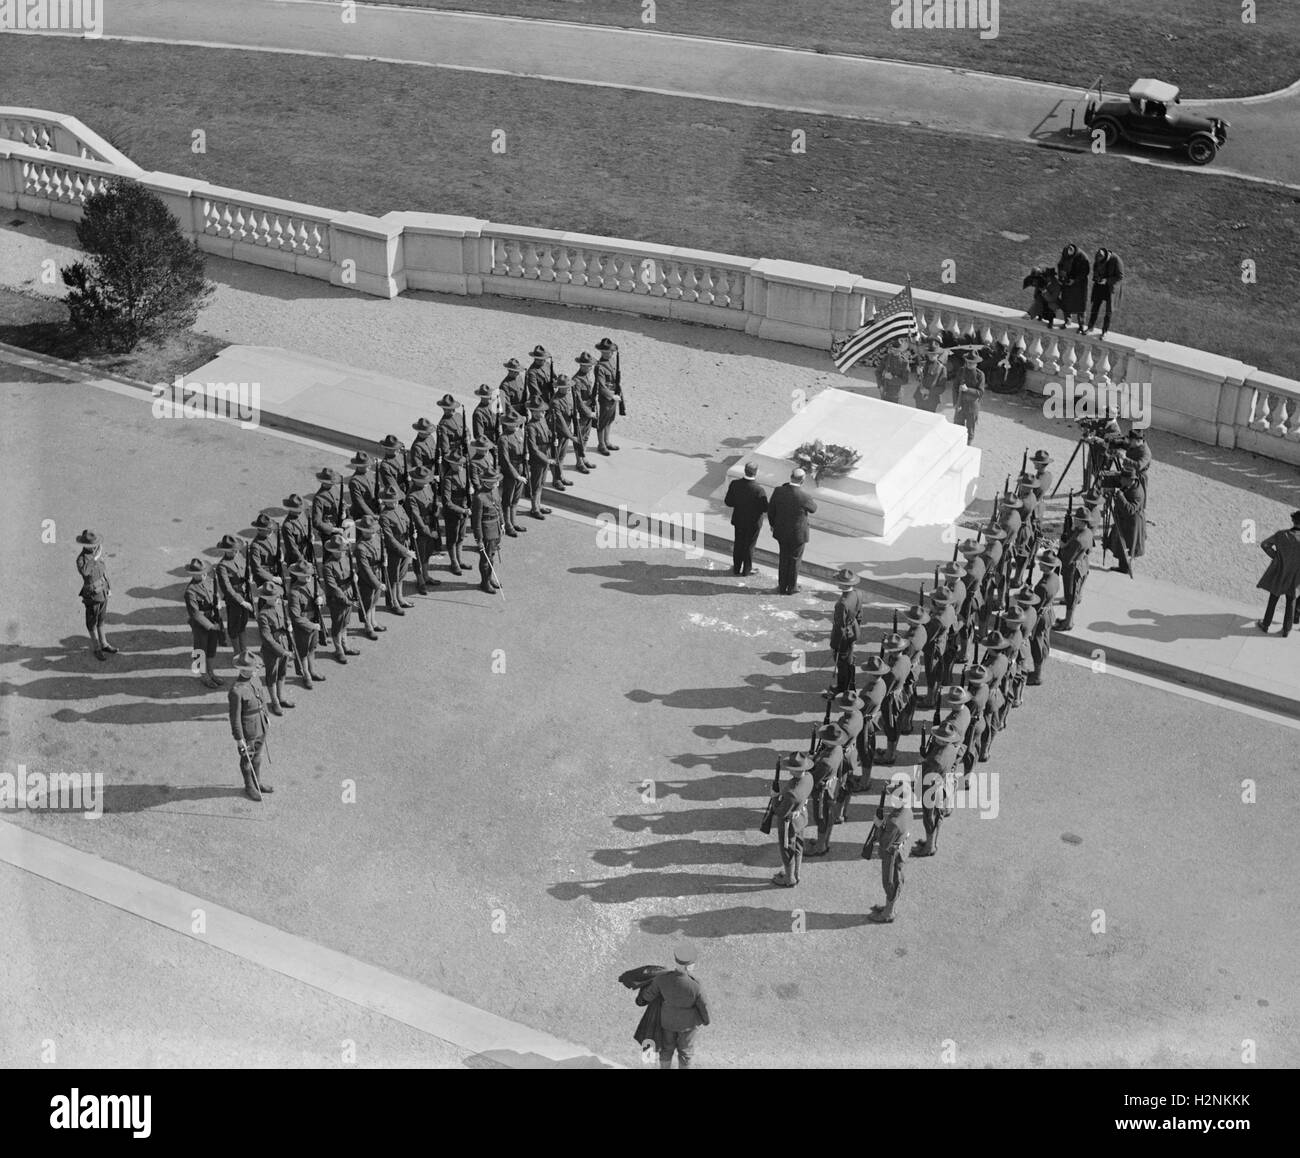 Formation militaire sur la Tombe du Soldat inconnu, le Cimetière National d'Arlington, Arlington, Virginia, USA, National Photo Company, Octobre 1922 Banque D'Images